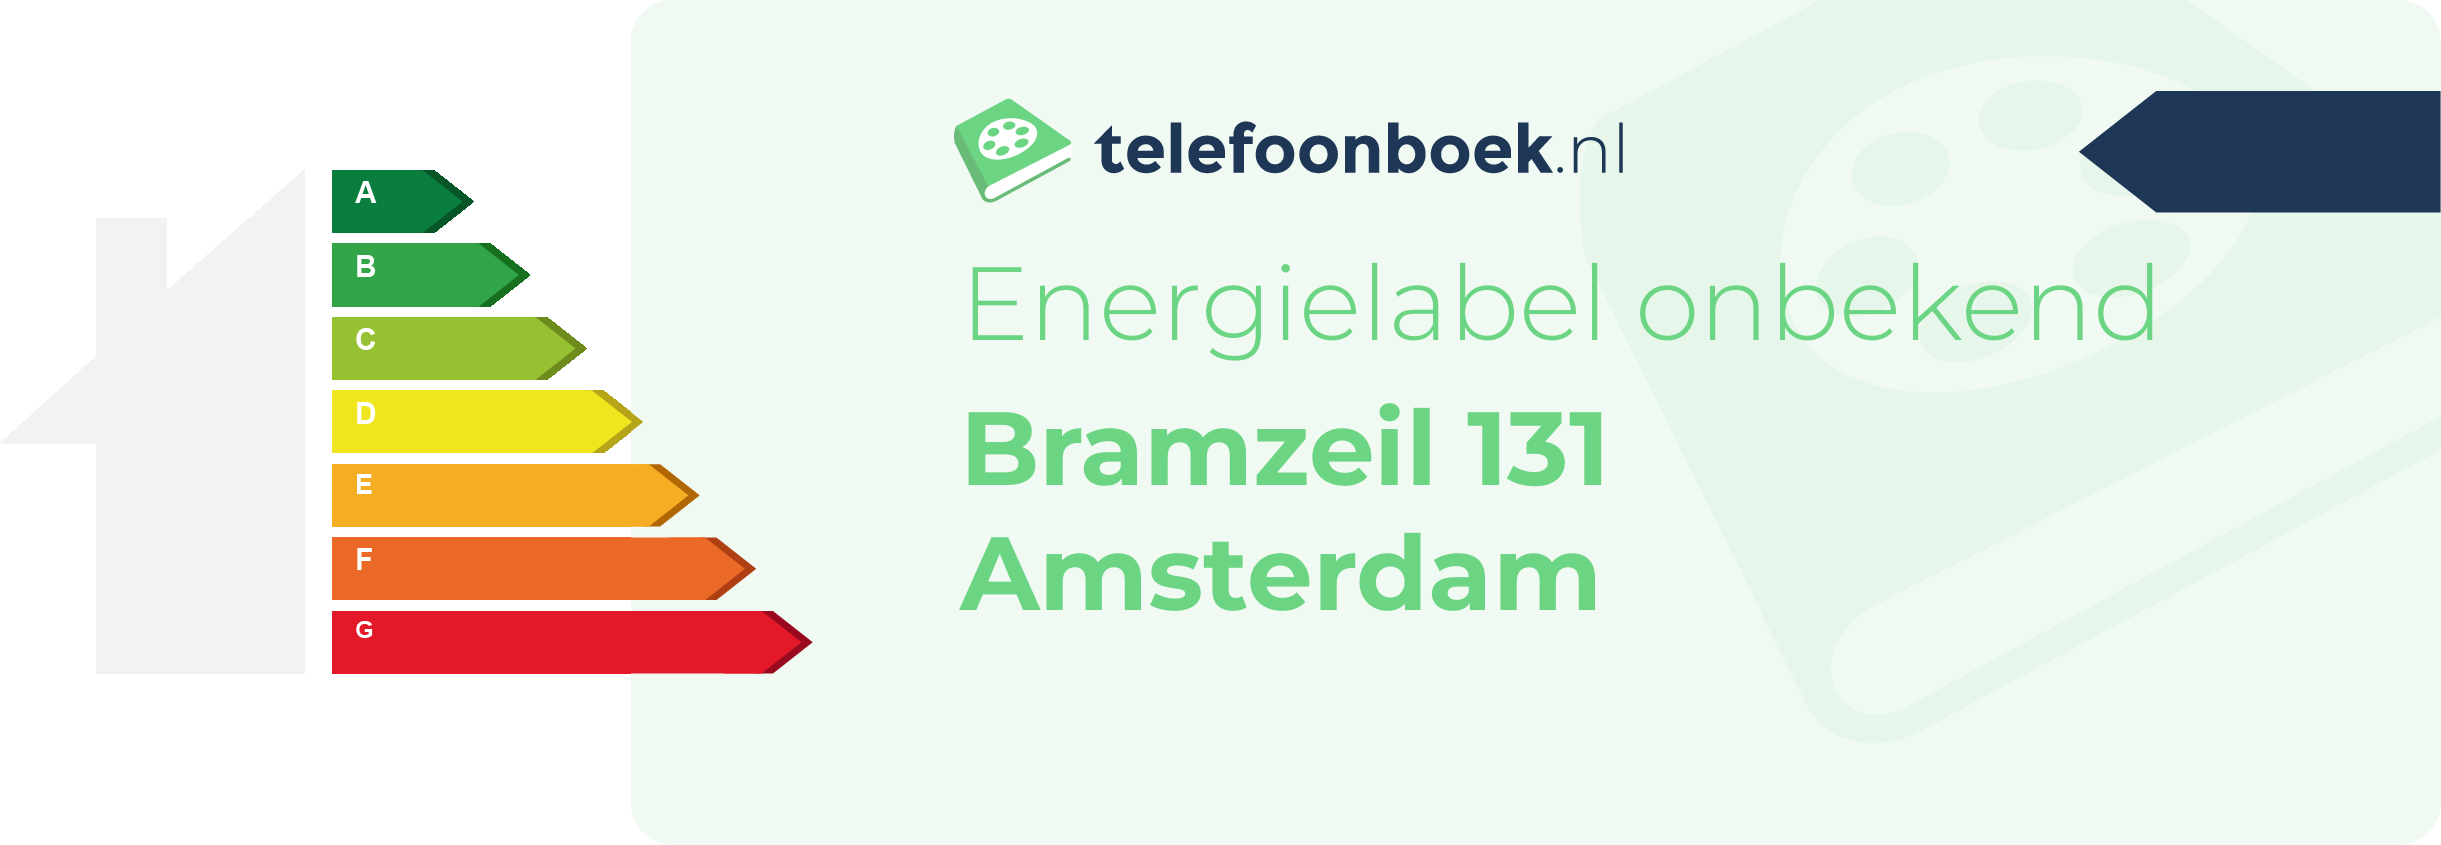 Energielabel Bramzeil 131 Amsterdam